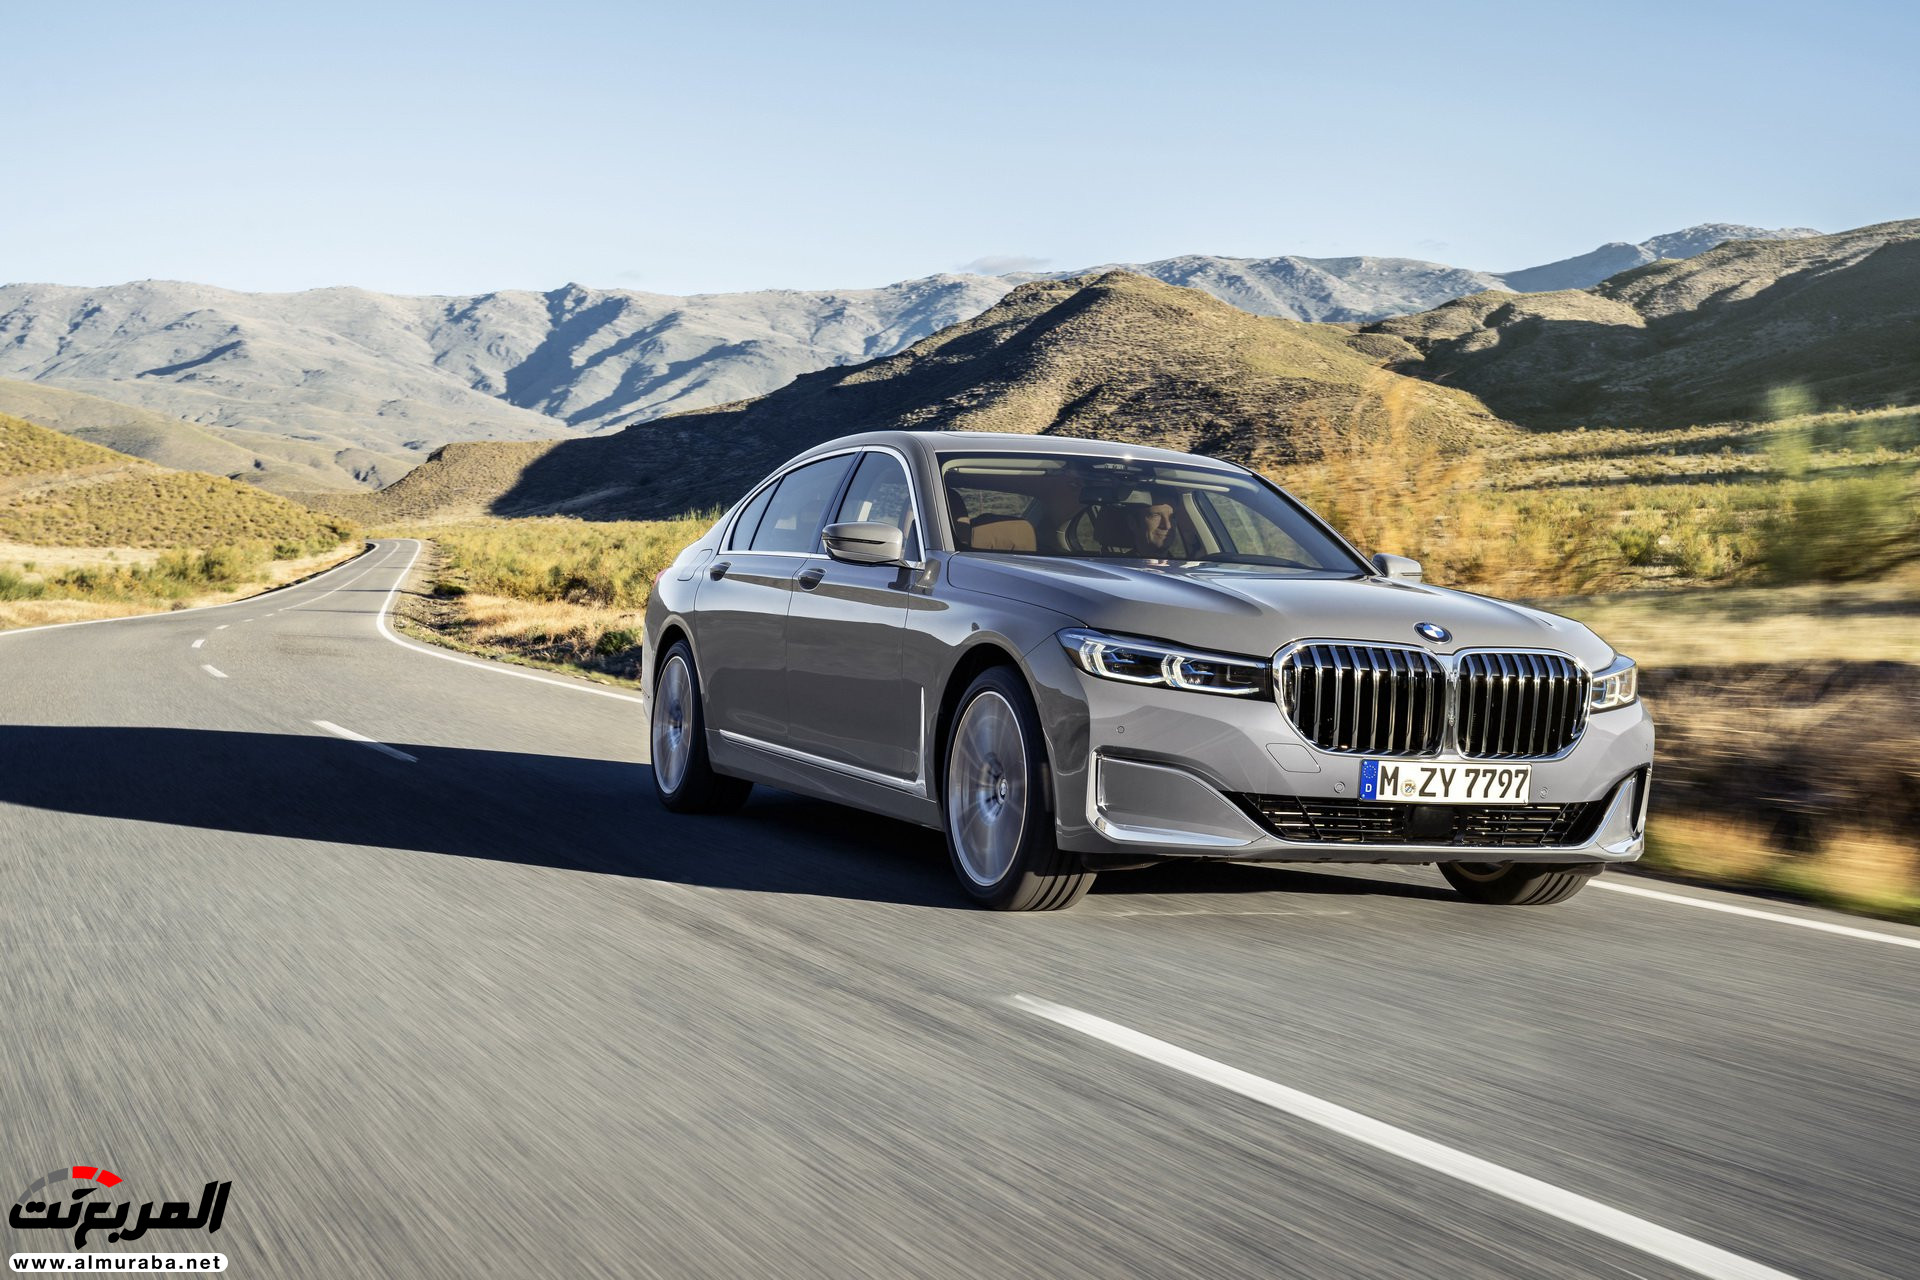 بي ام دبليو الفئة السابعة 2020 المحدثة تكشف نفسها رسمياً "صور ومواصفات" BMW 7 Series 261